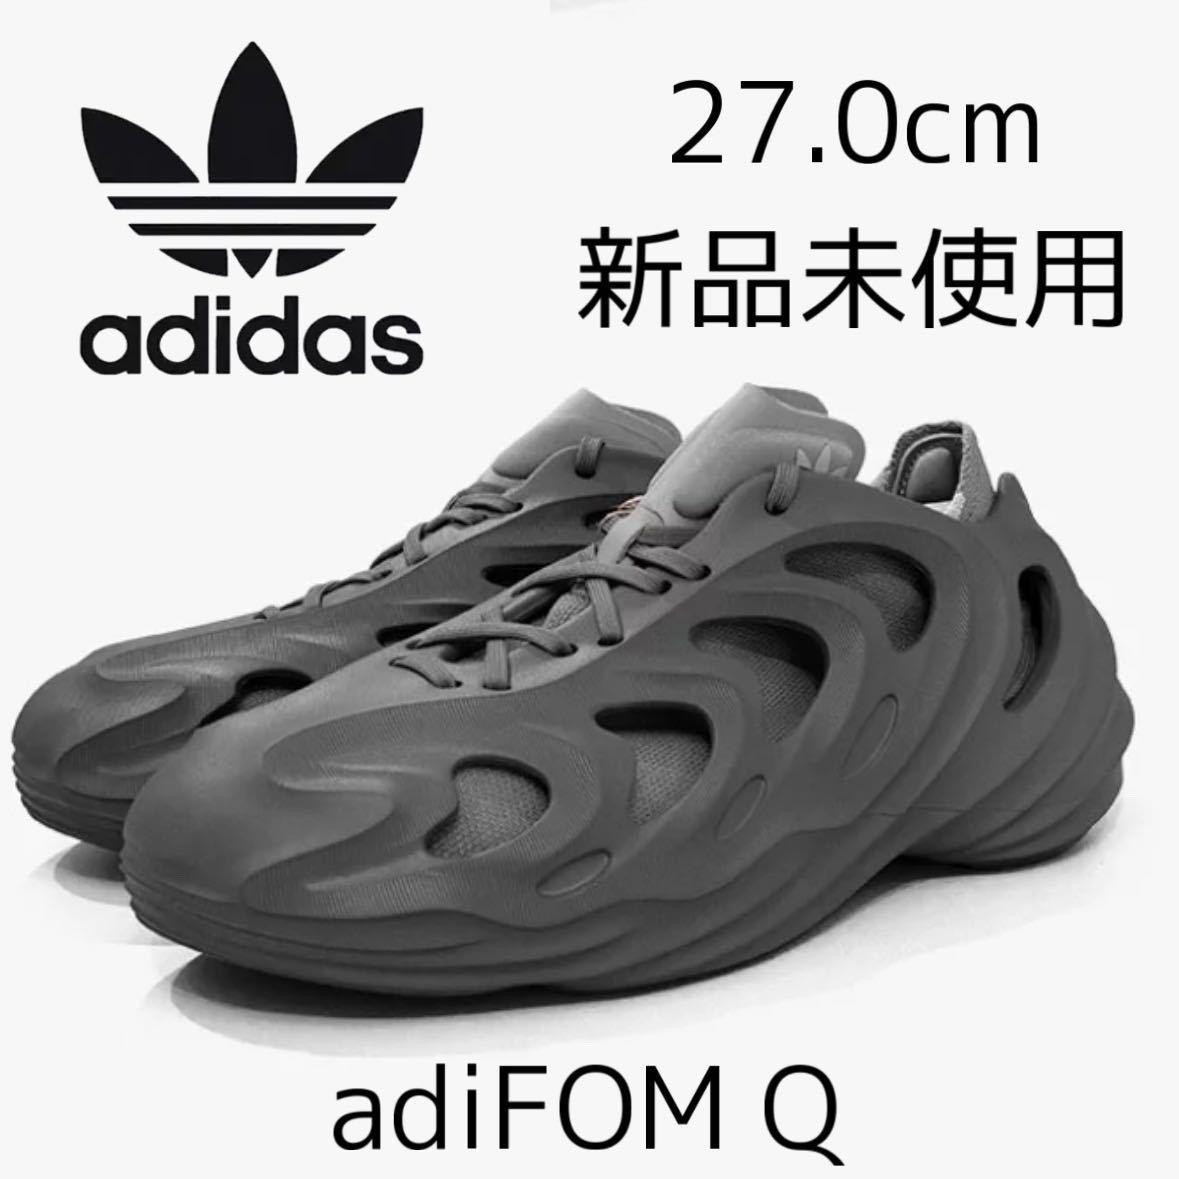 Yahoo!オークション - 27.0cm 新品 adiFOM Q 正規品 adidas...